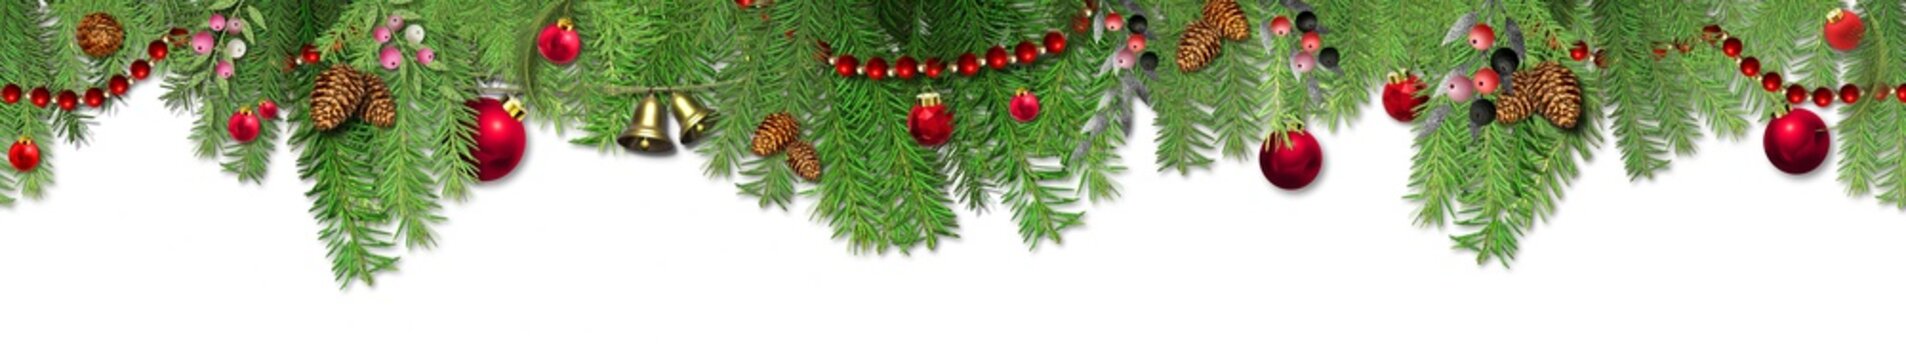 Christmas horizontal garland